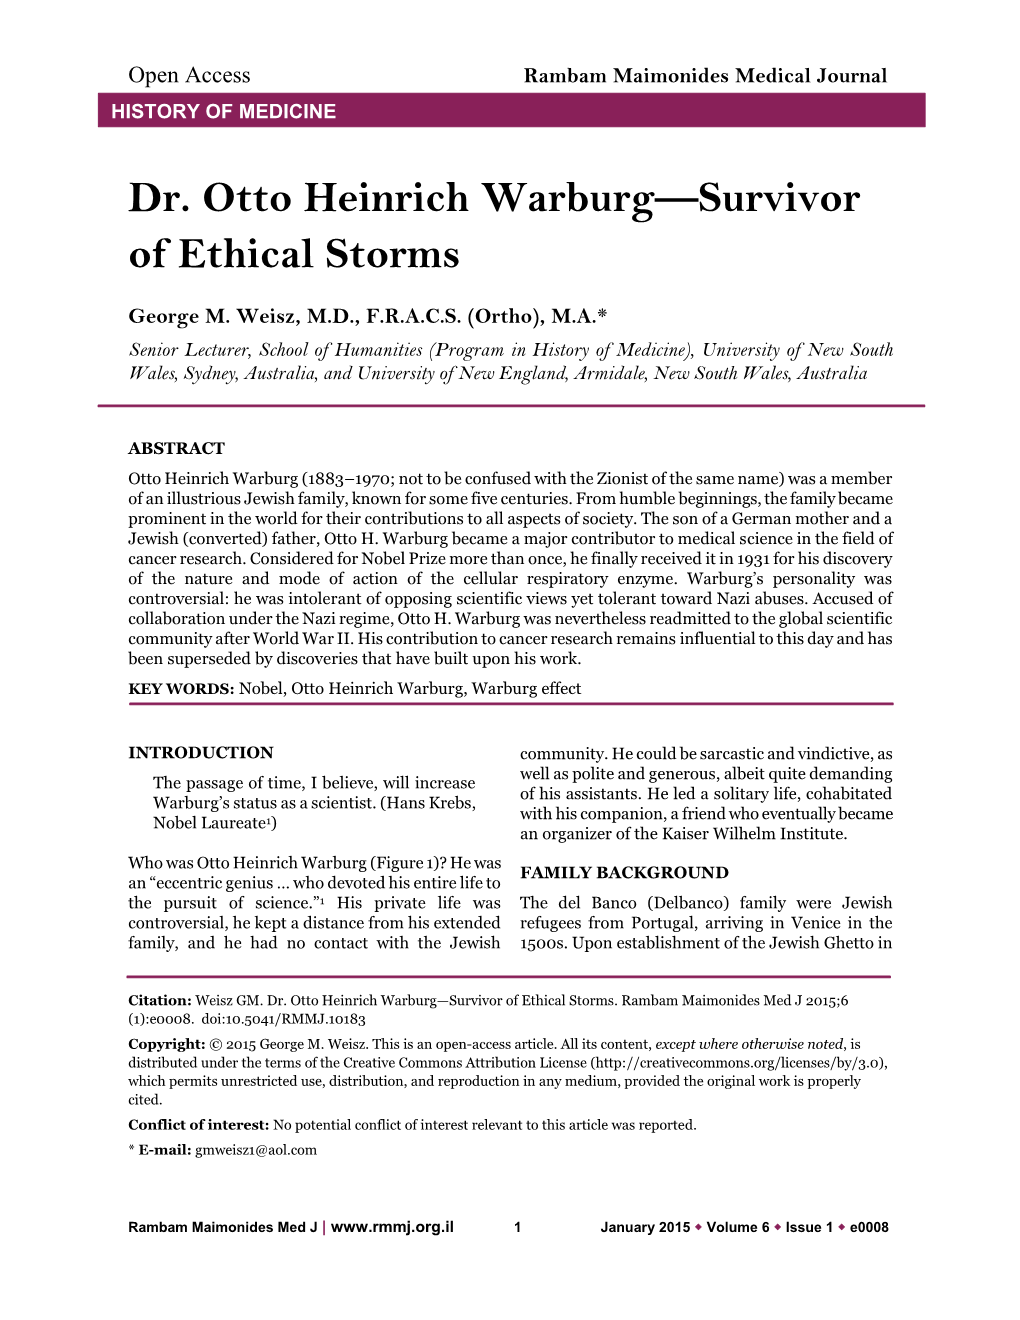 Dr. Otto Heinrich Warburg—Survivor of Ethical Storms